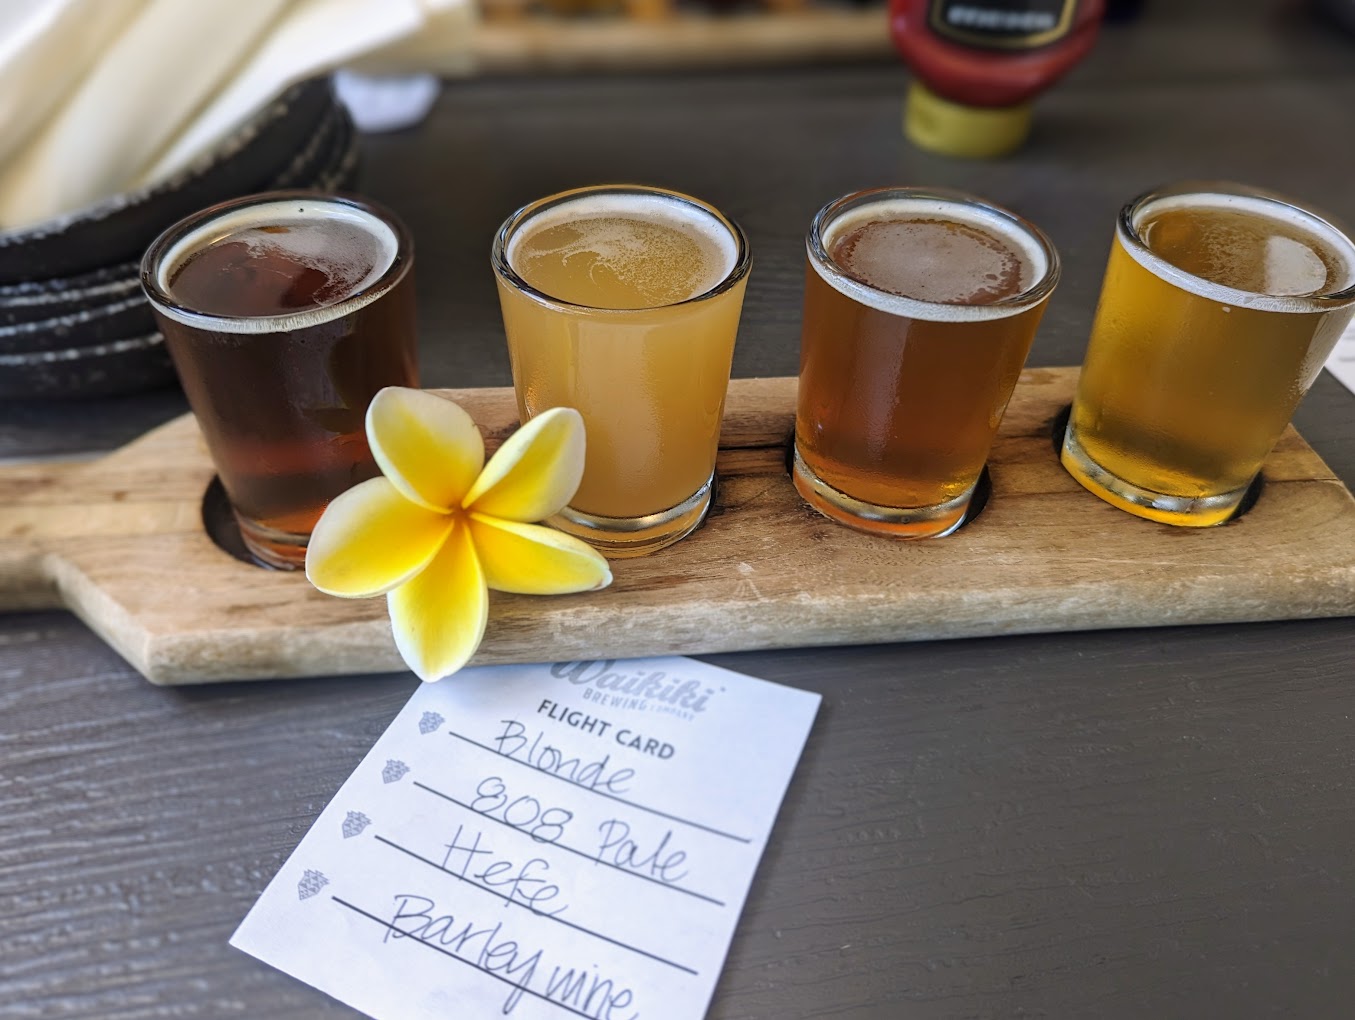 Beer flight at Waikiki brewing